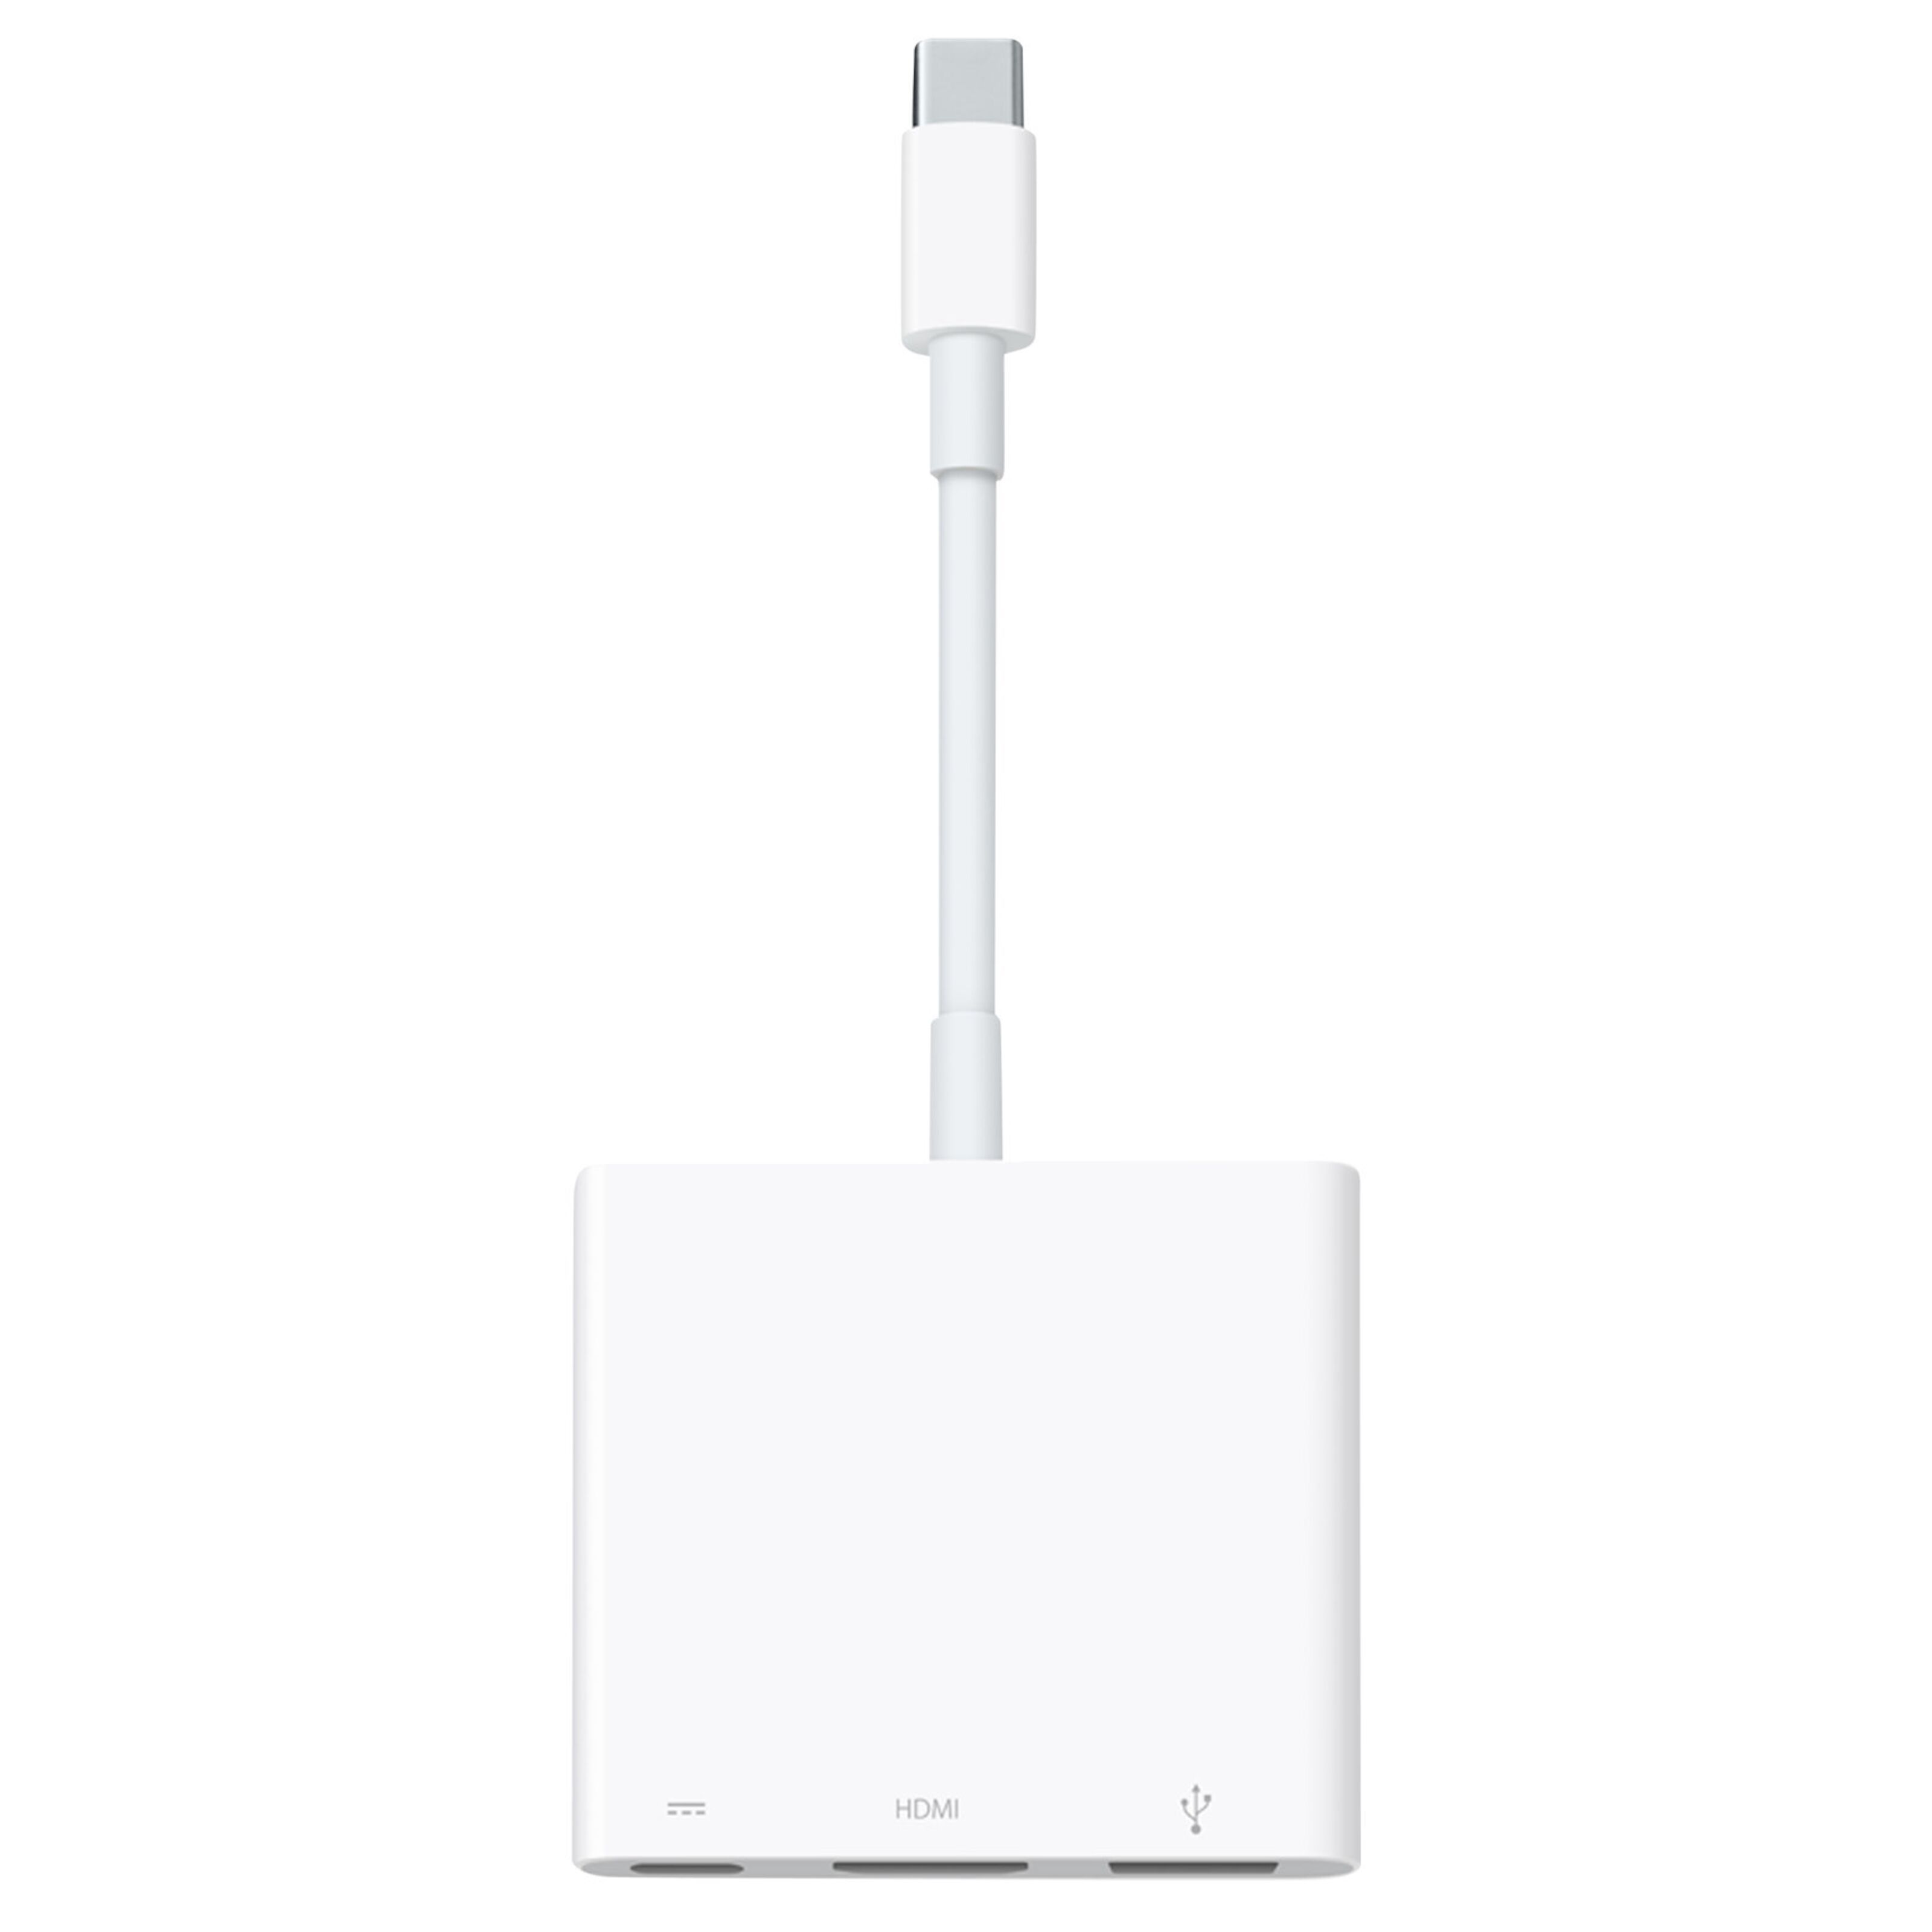 Apple USB-C digital a/v multiport-adapter - Mac-tillbehör | Kjell.com